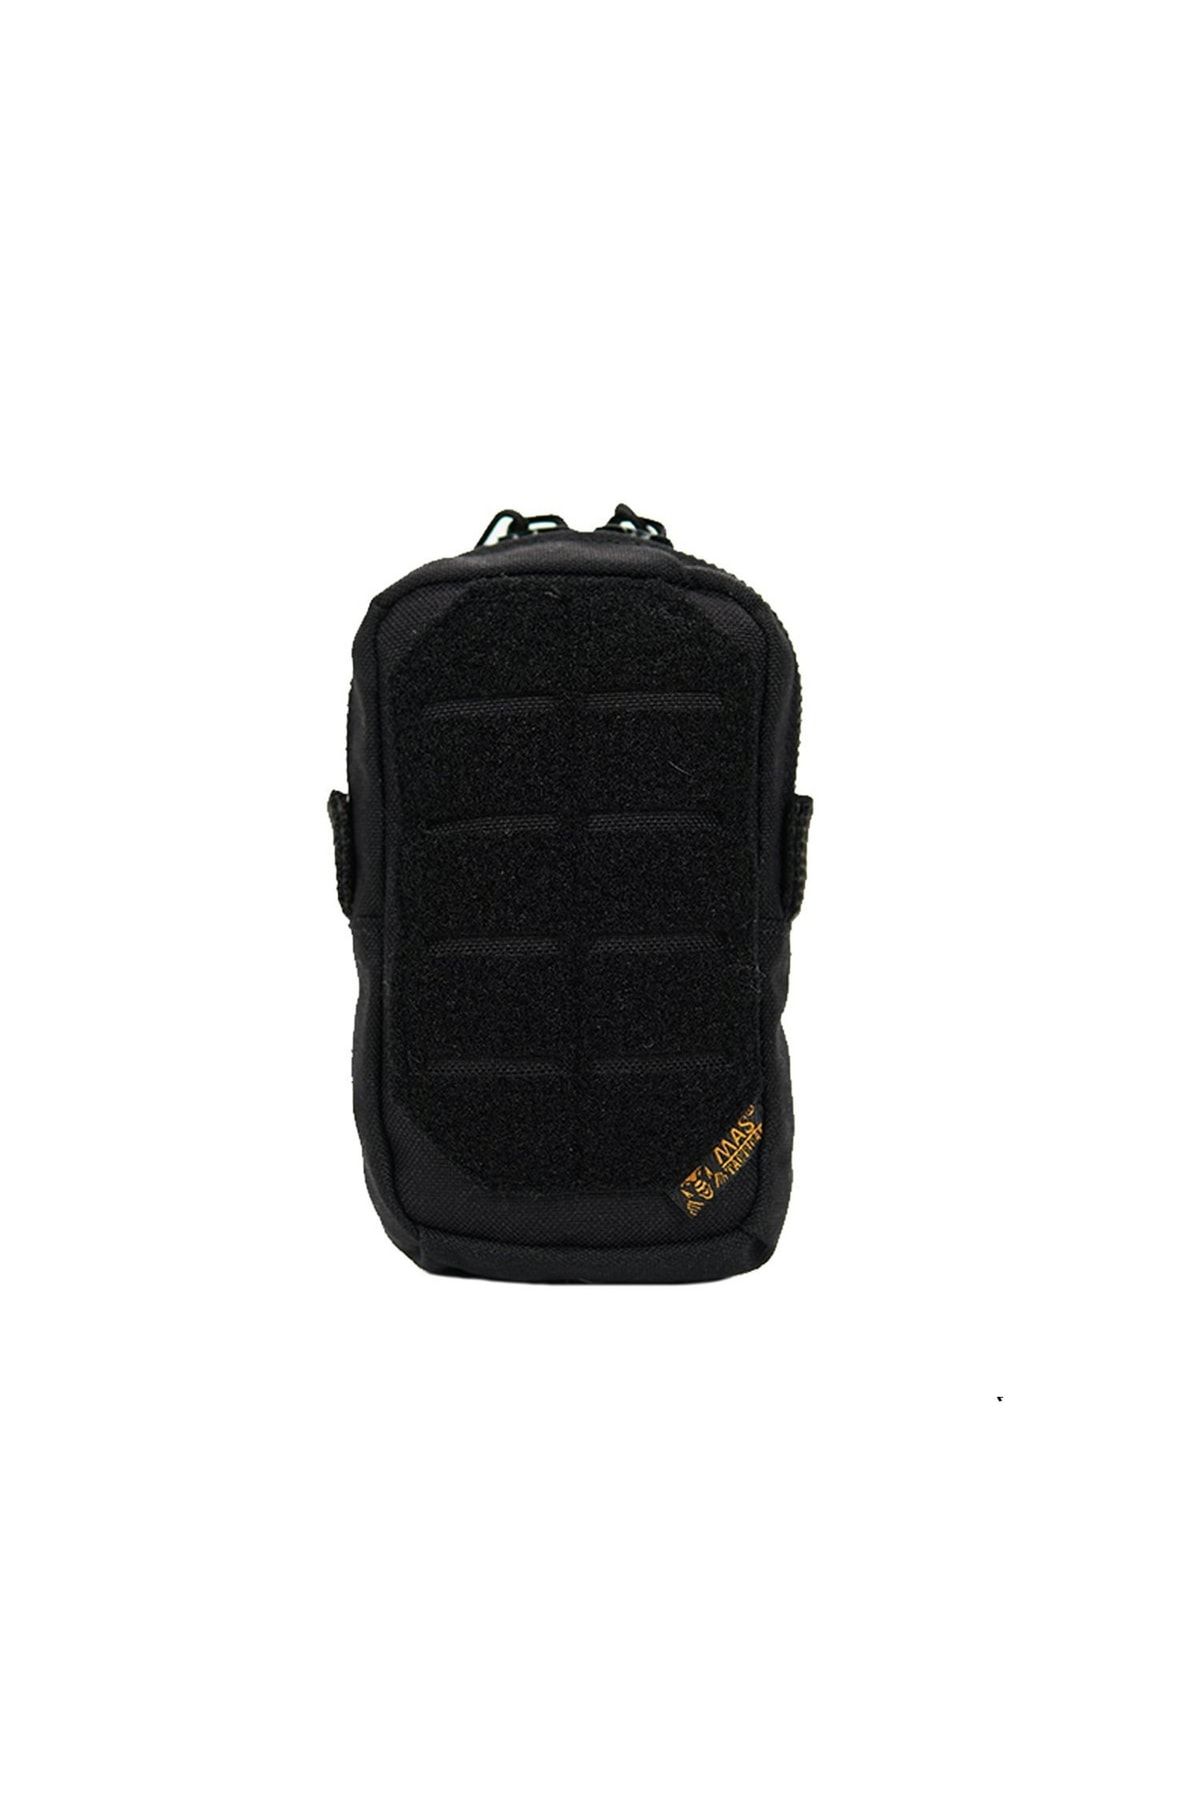 Mastactical Taktik Yardımcı Dikey Cep/çanta (8x14x4cm) - Siyah